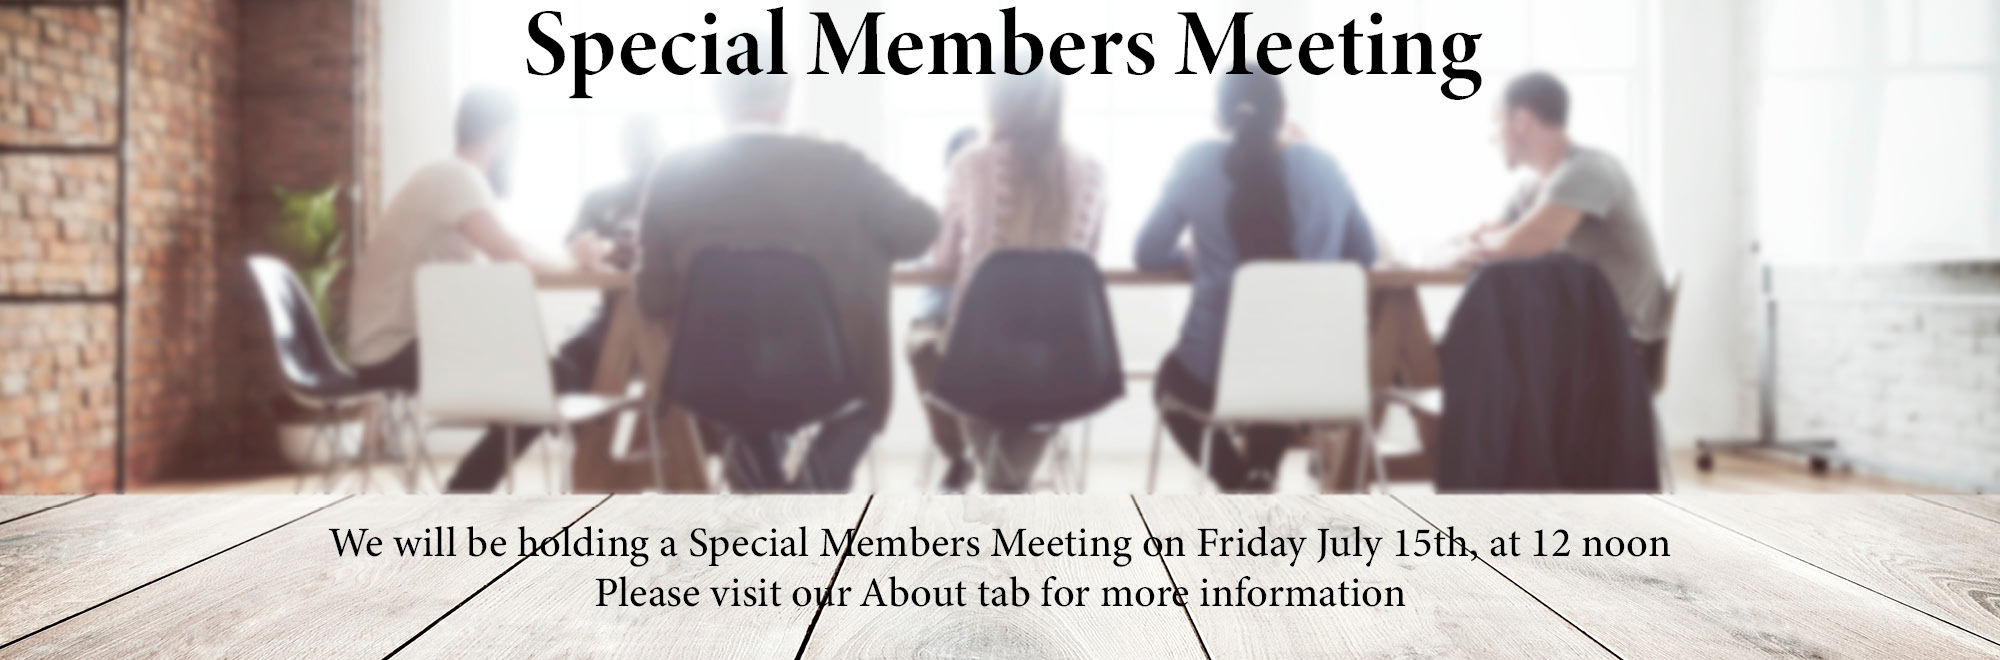 Special Members Meeting